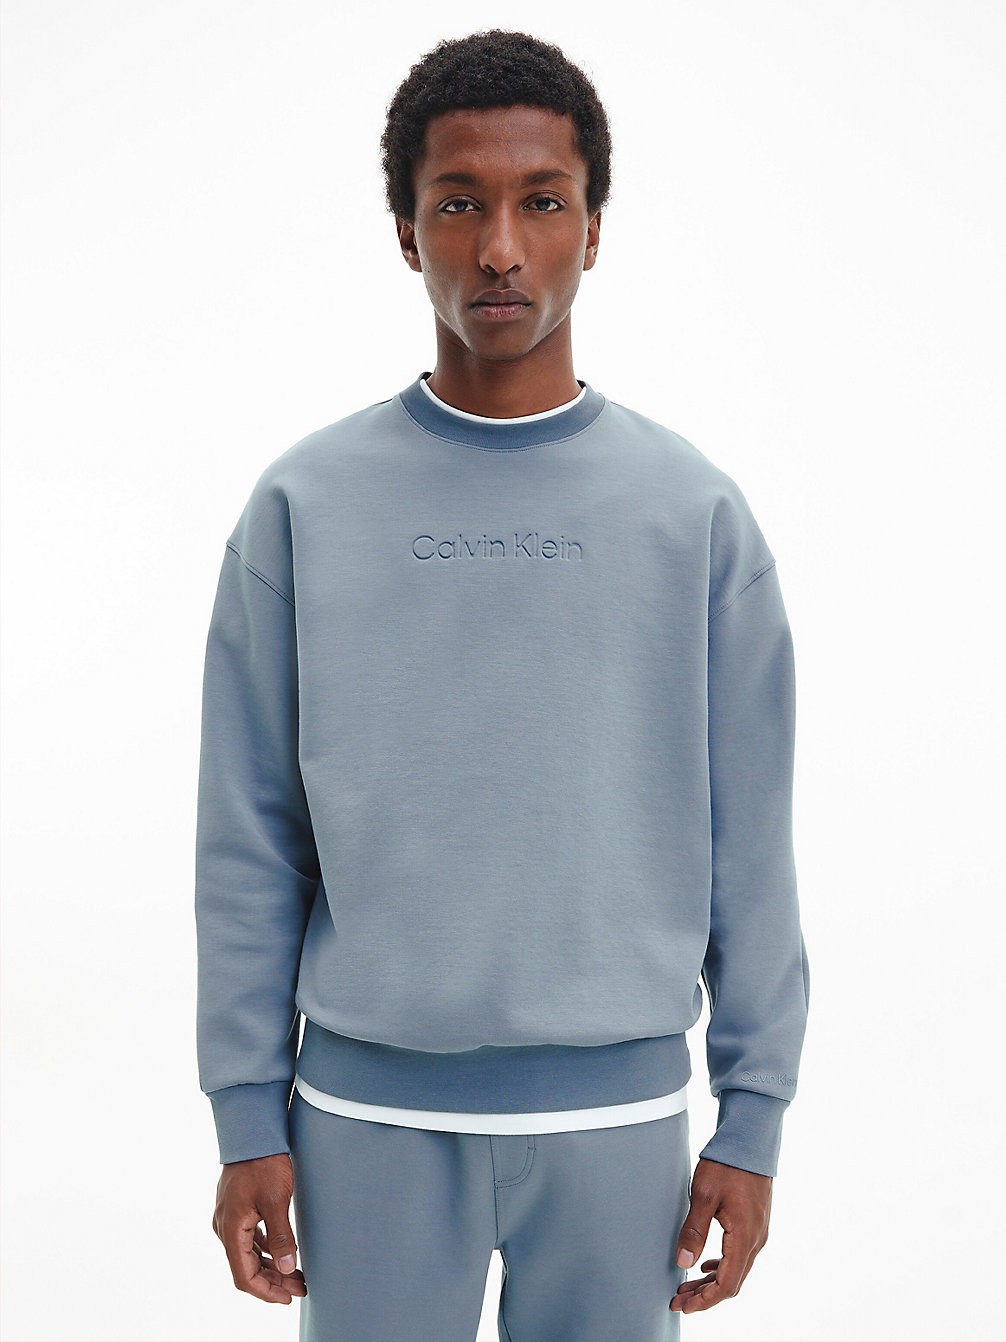 GREY TAR > Luźna Bluza Z Bawełny Organicznej > undefined Mężczyźni - Calvin Klein